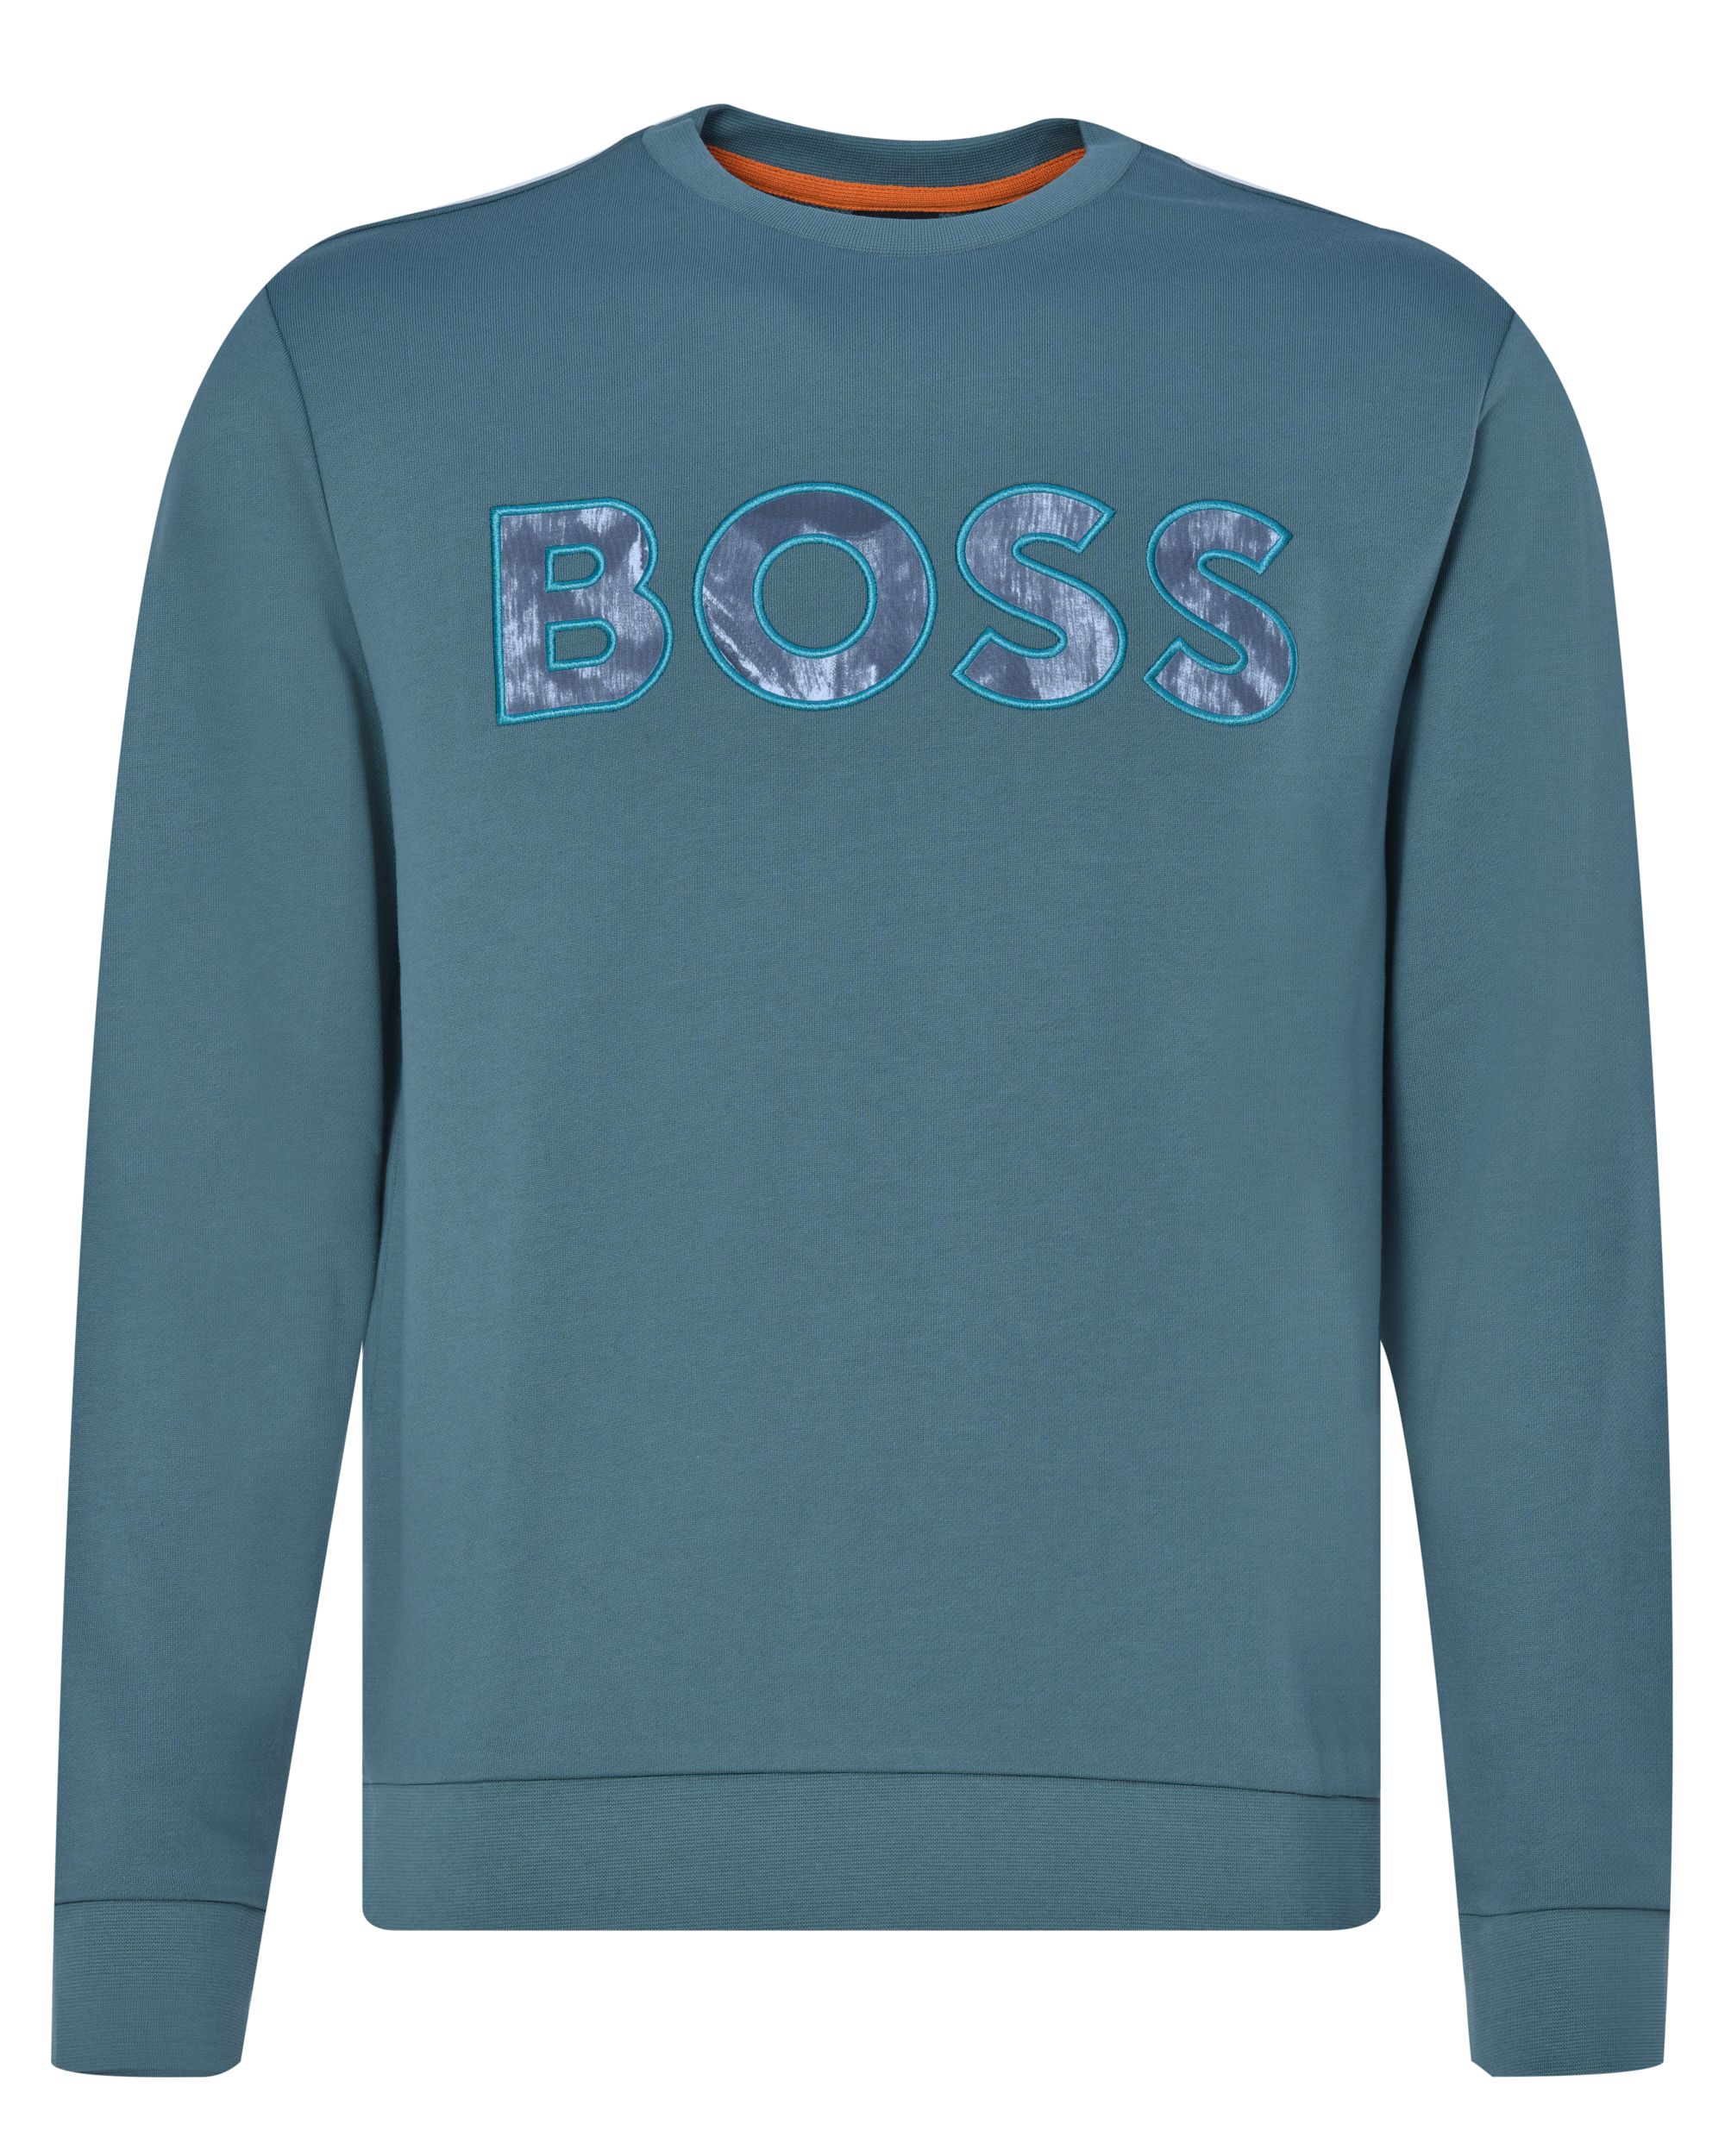 Hugo Boss Menswear Sweater Groen 082287-001-L